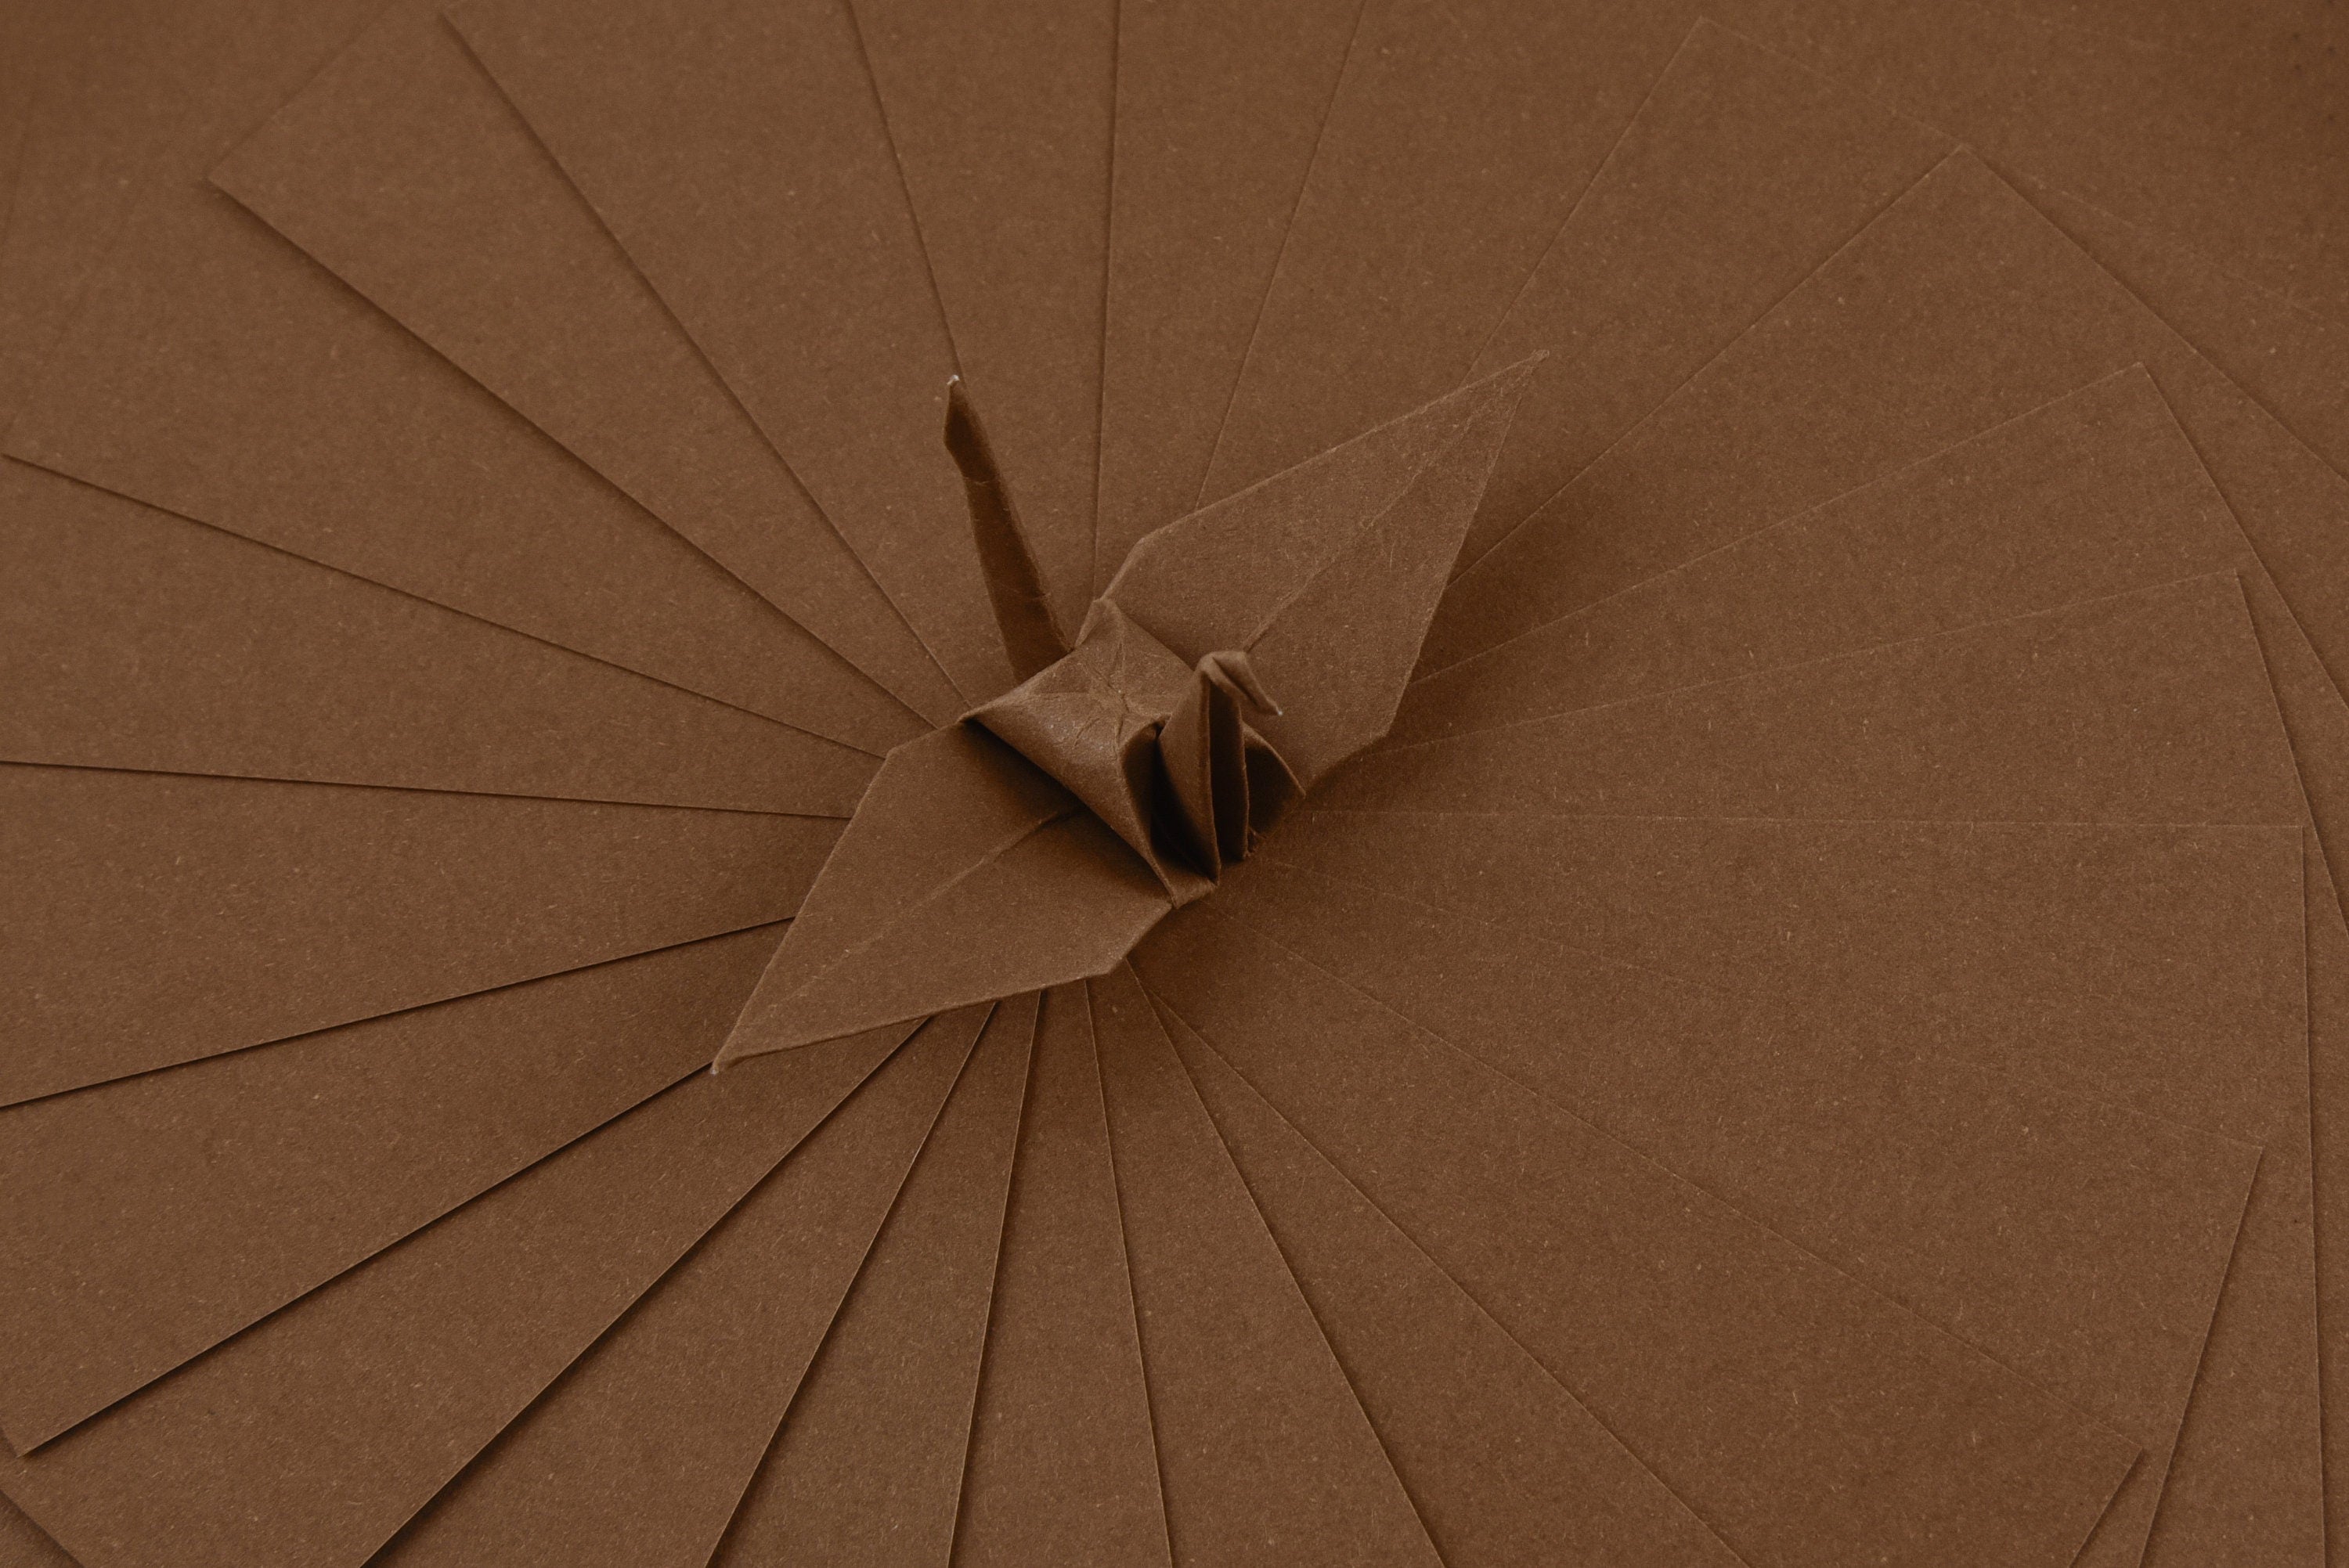 100 Hojas de Papel Origami Marrón - 3x3 pulgadas - Paquete de Papel Cuadrado para Plegar, Grullas de Origami y Decoración - S07